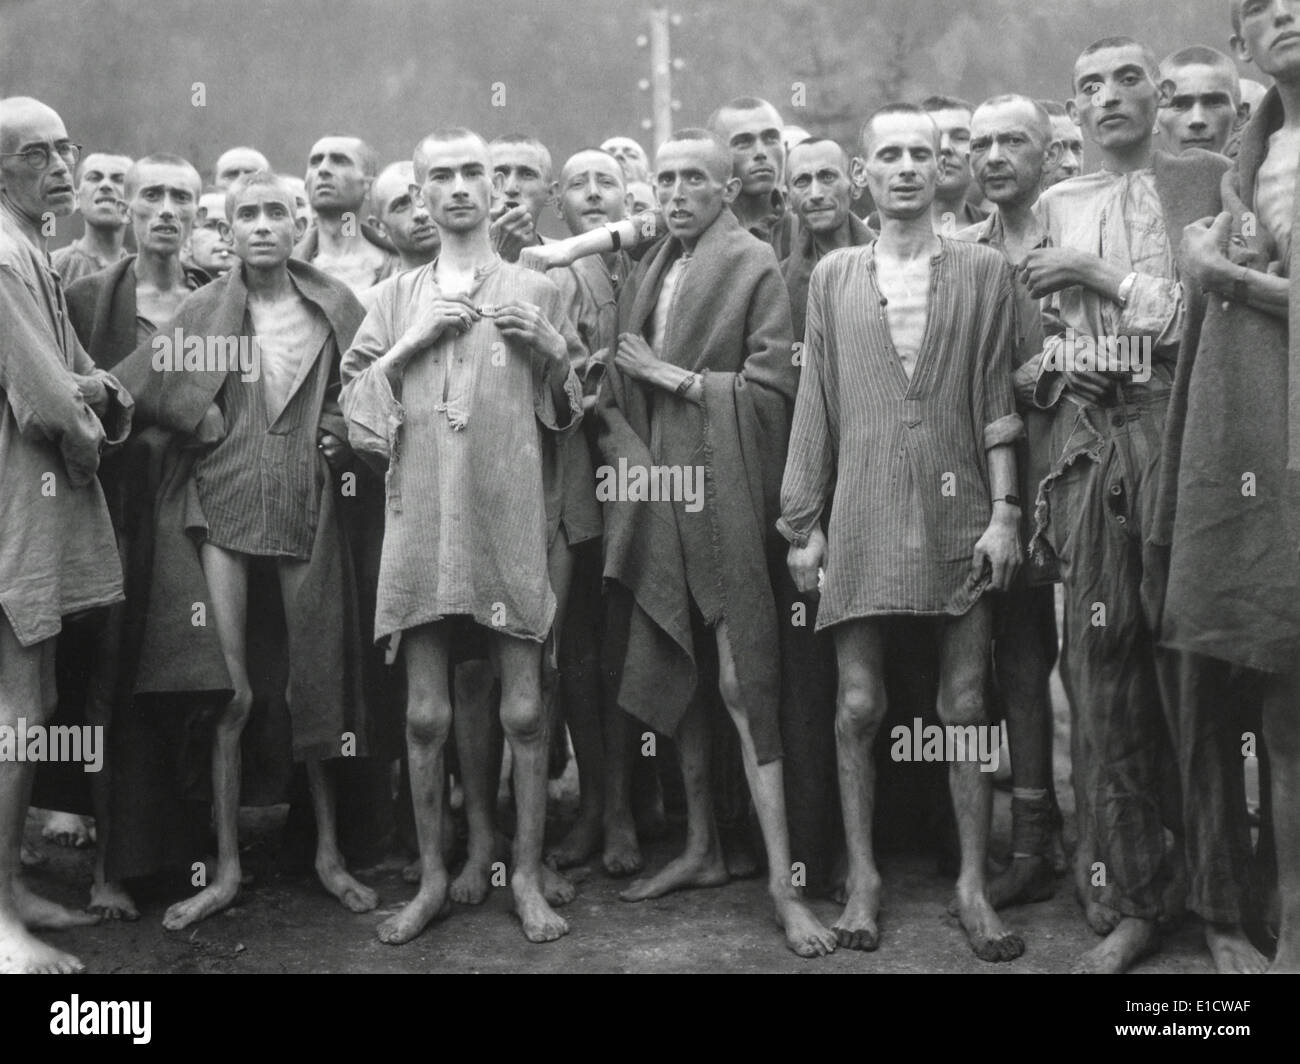 Häftlinge des KZ Ebensee nach ihrer Befreiung durch amerikanische am 6. Mai 1945 Truppen. Zur Verfügung gestellt Sklavenarbeit, Ebensee Stockfoto